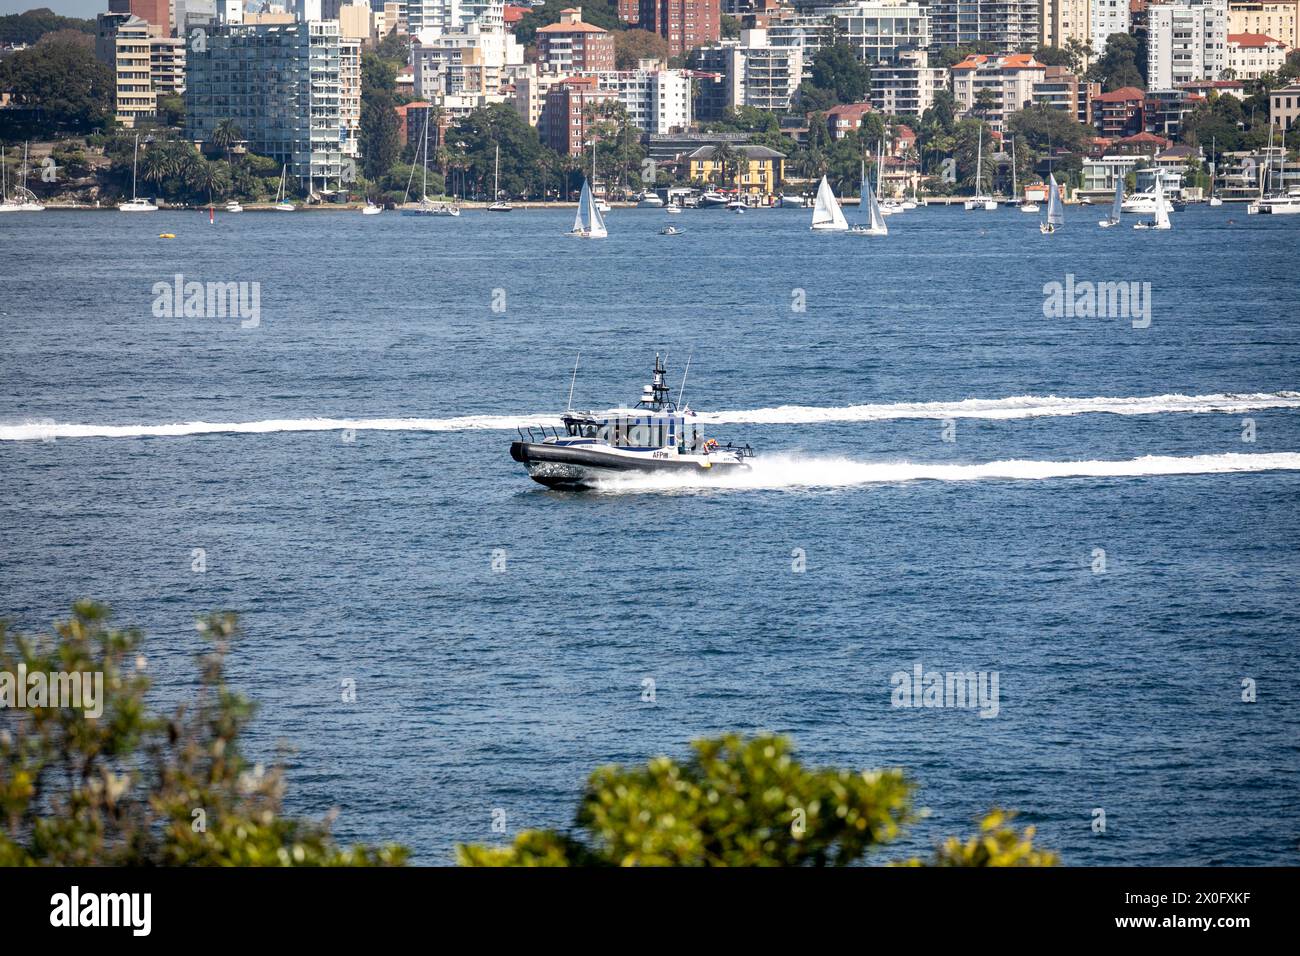 Australische Bundespolizei, australiens Bundespolizei, mit ihrem Hochgeschwindigkeits-RIB-Boot AFP10 im Hafen von Sydney, das von Yamba gebaut wurde Stockfoto